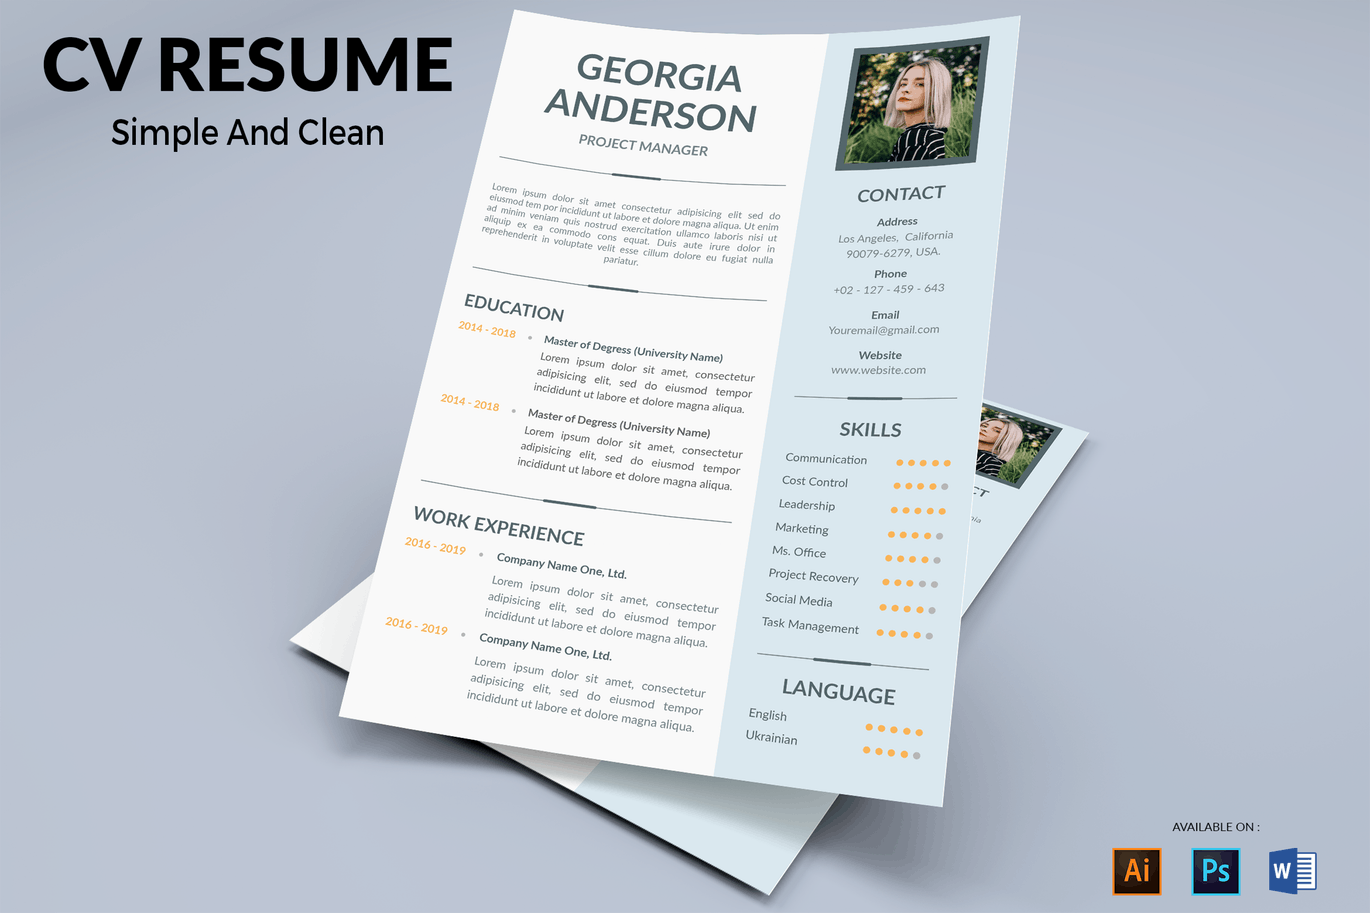 项目经理二合一专业第一素材精选简历模板 CV Resume Professional插图